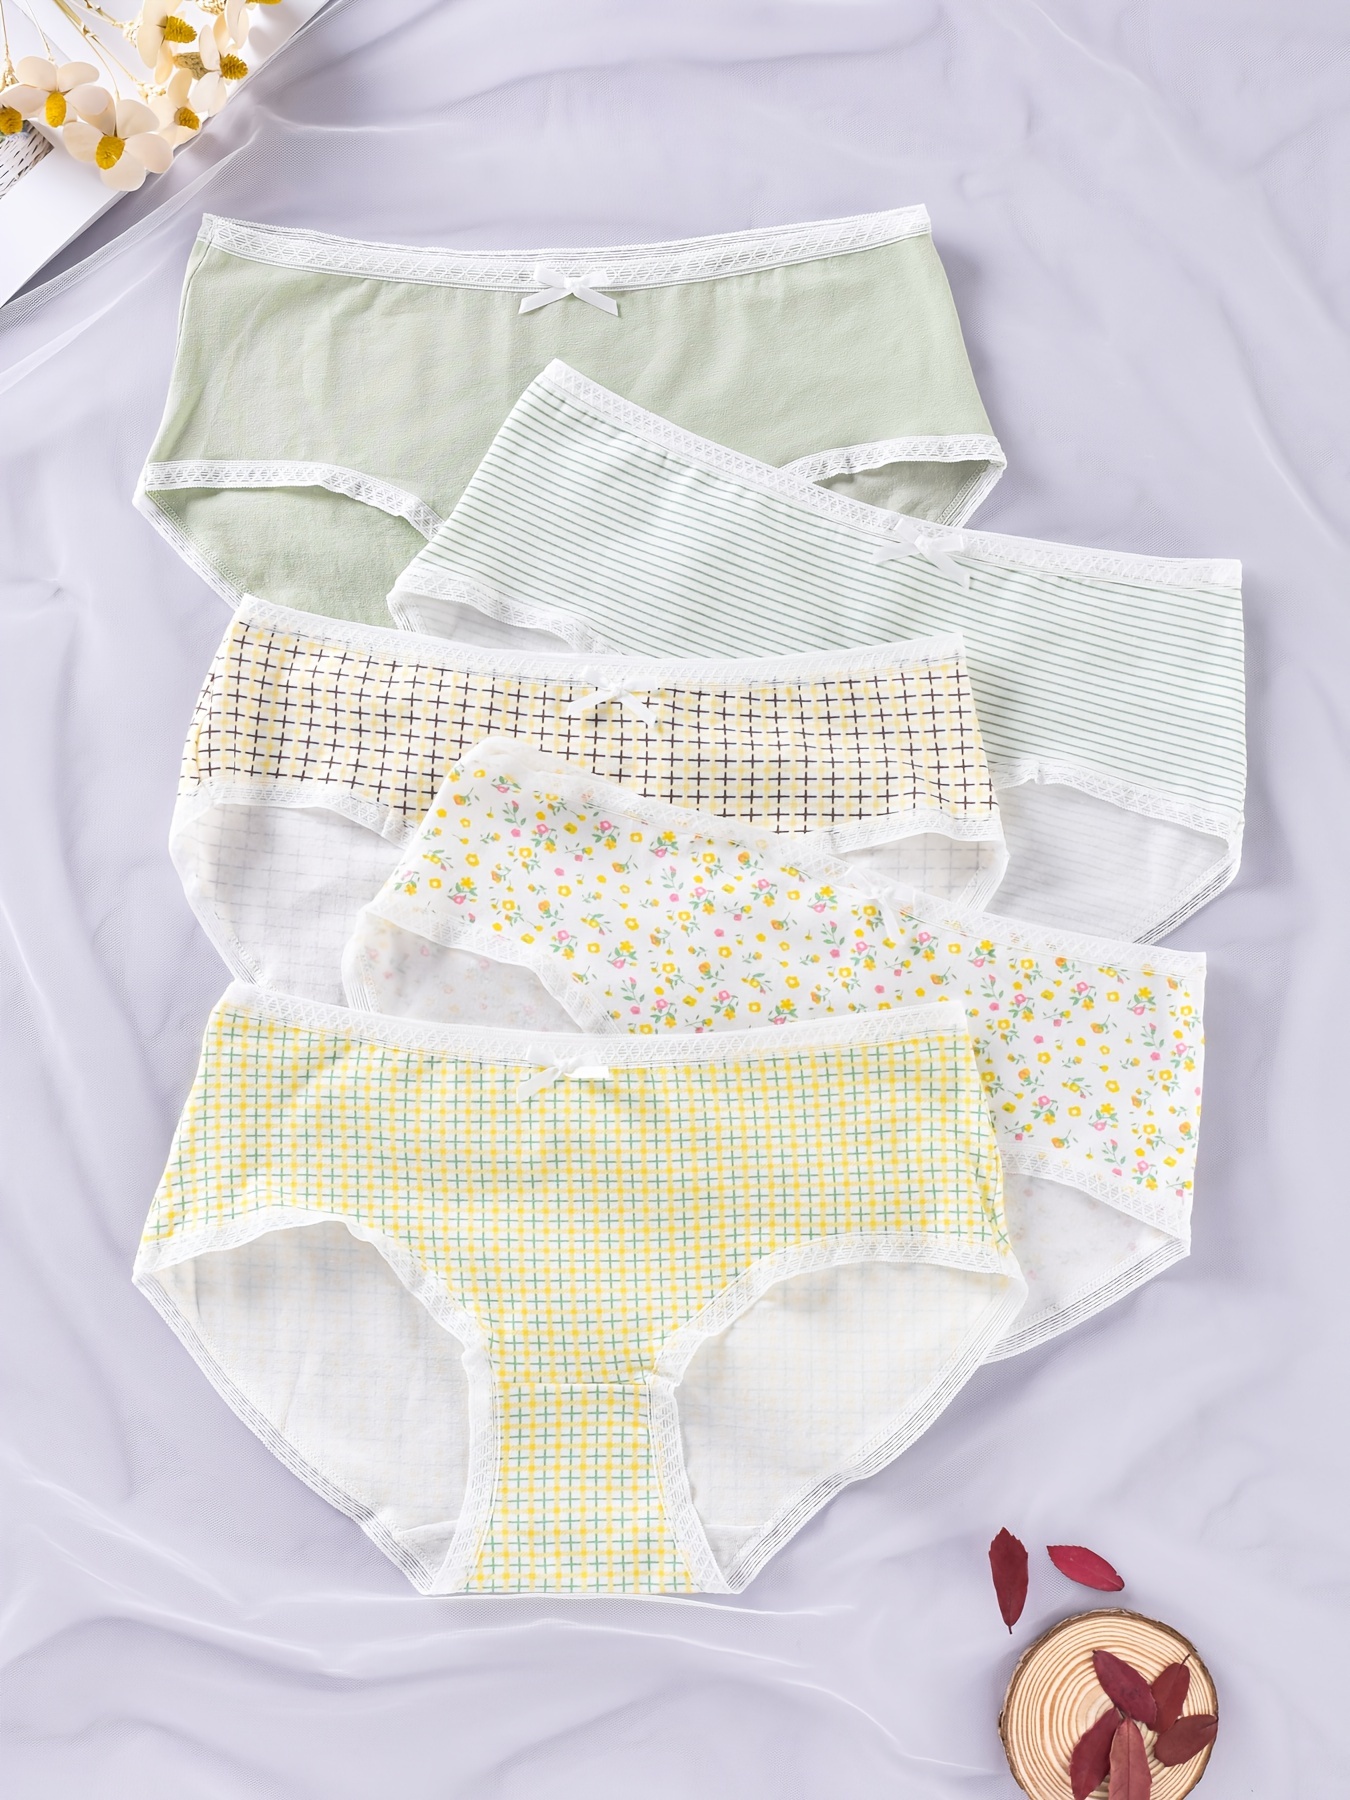 LANGSHA 5Pcs/Set Cotton Panties Women Luck Red Seamless Underwear Girls  Breathbale Comfort Briefs Soft Female